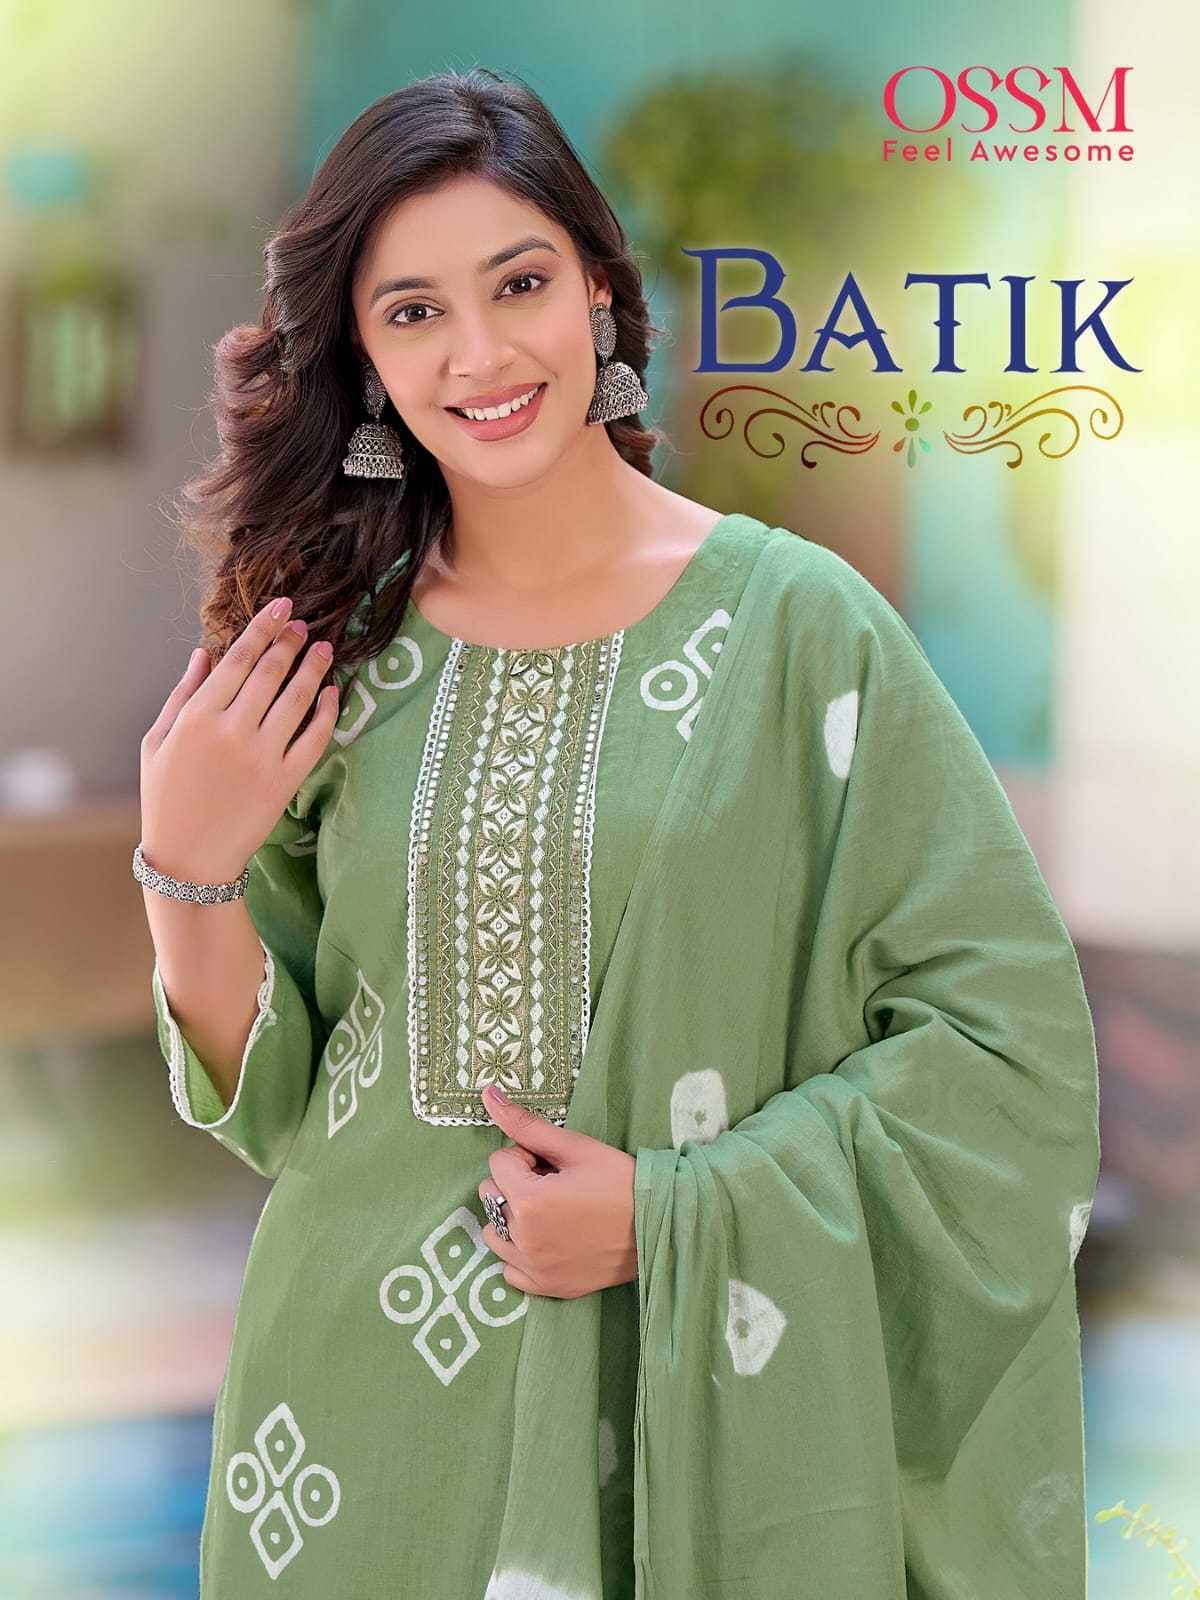 ossm batik beautiful print fullstitch summer wear salwar kameez